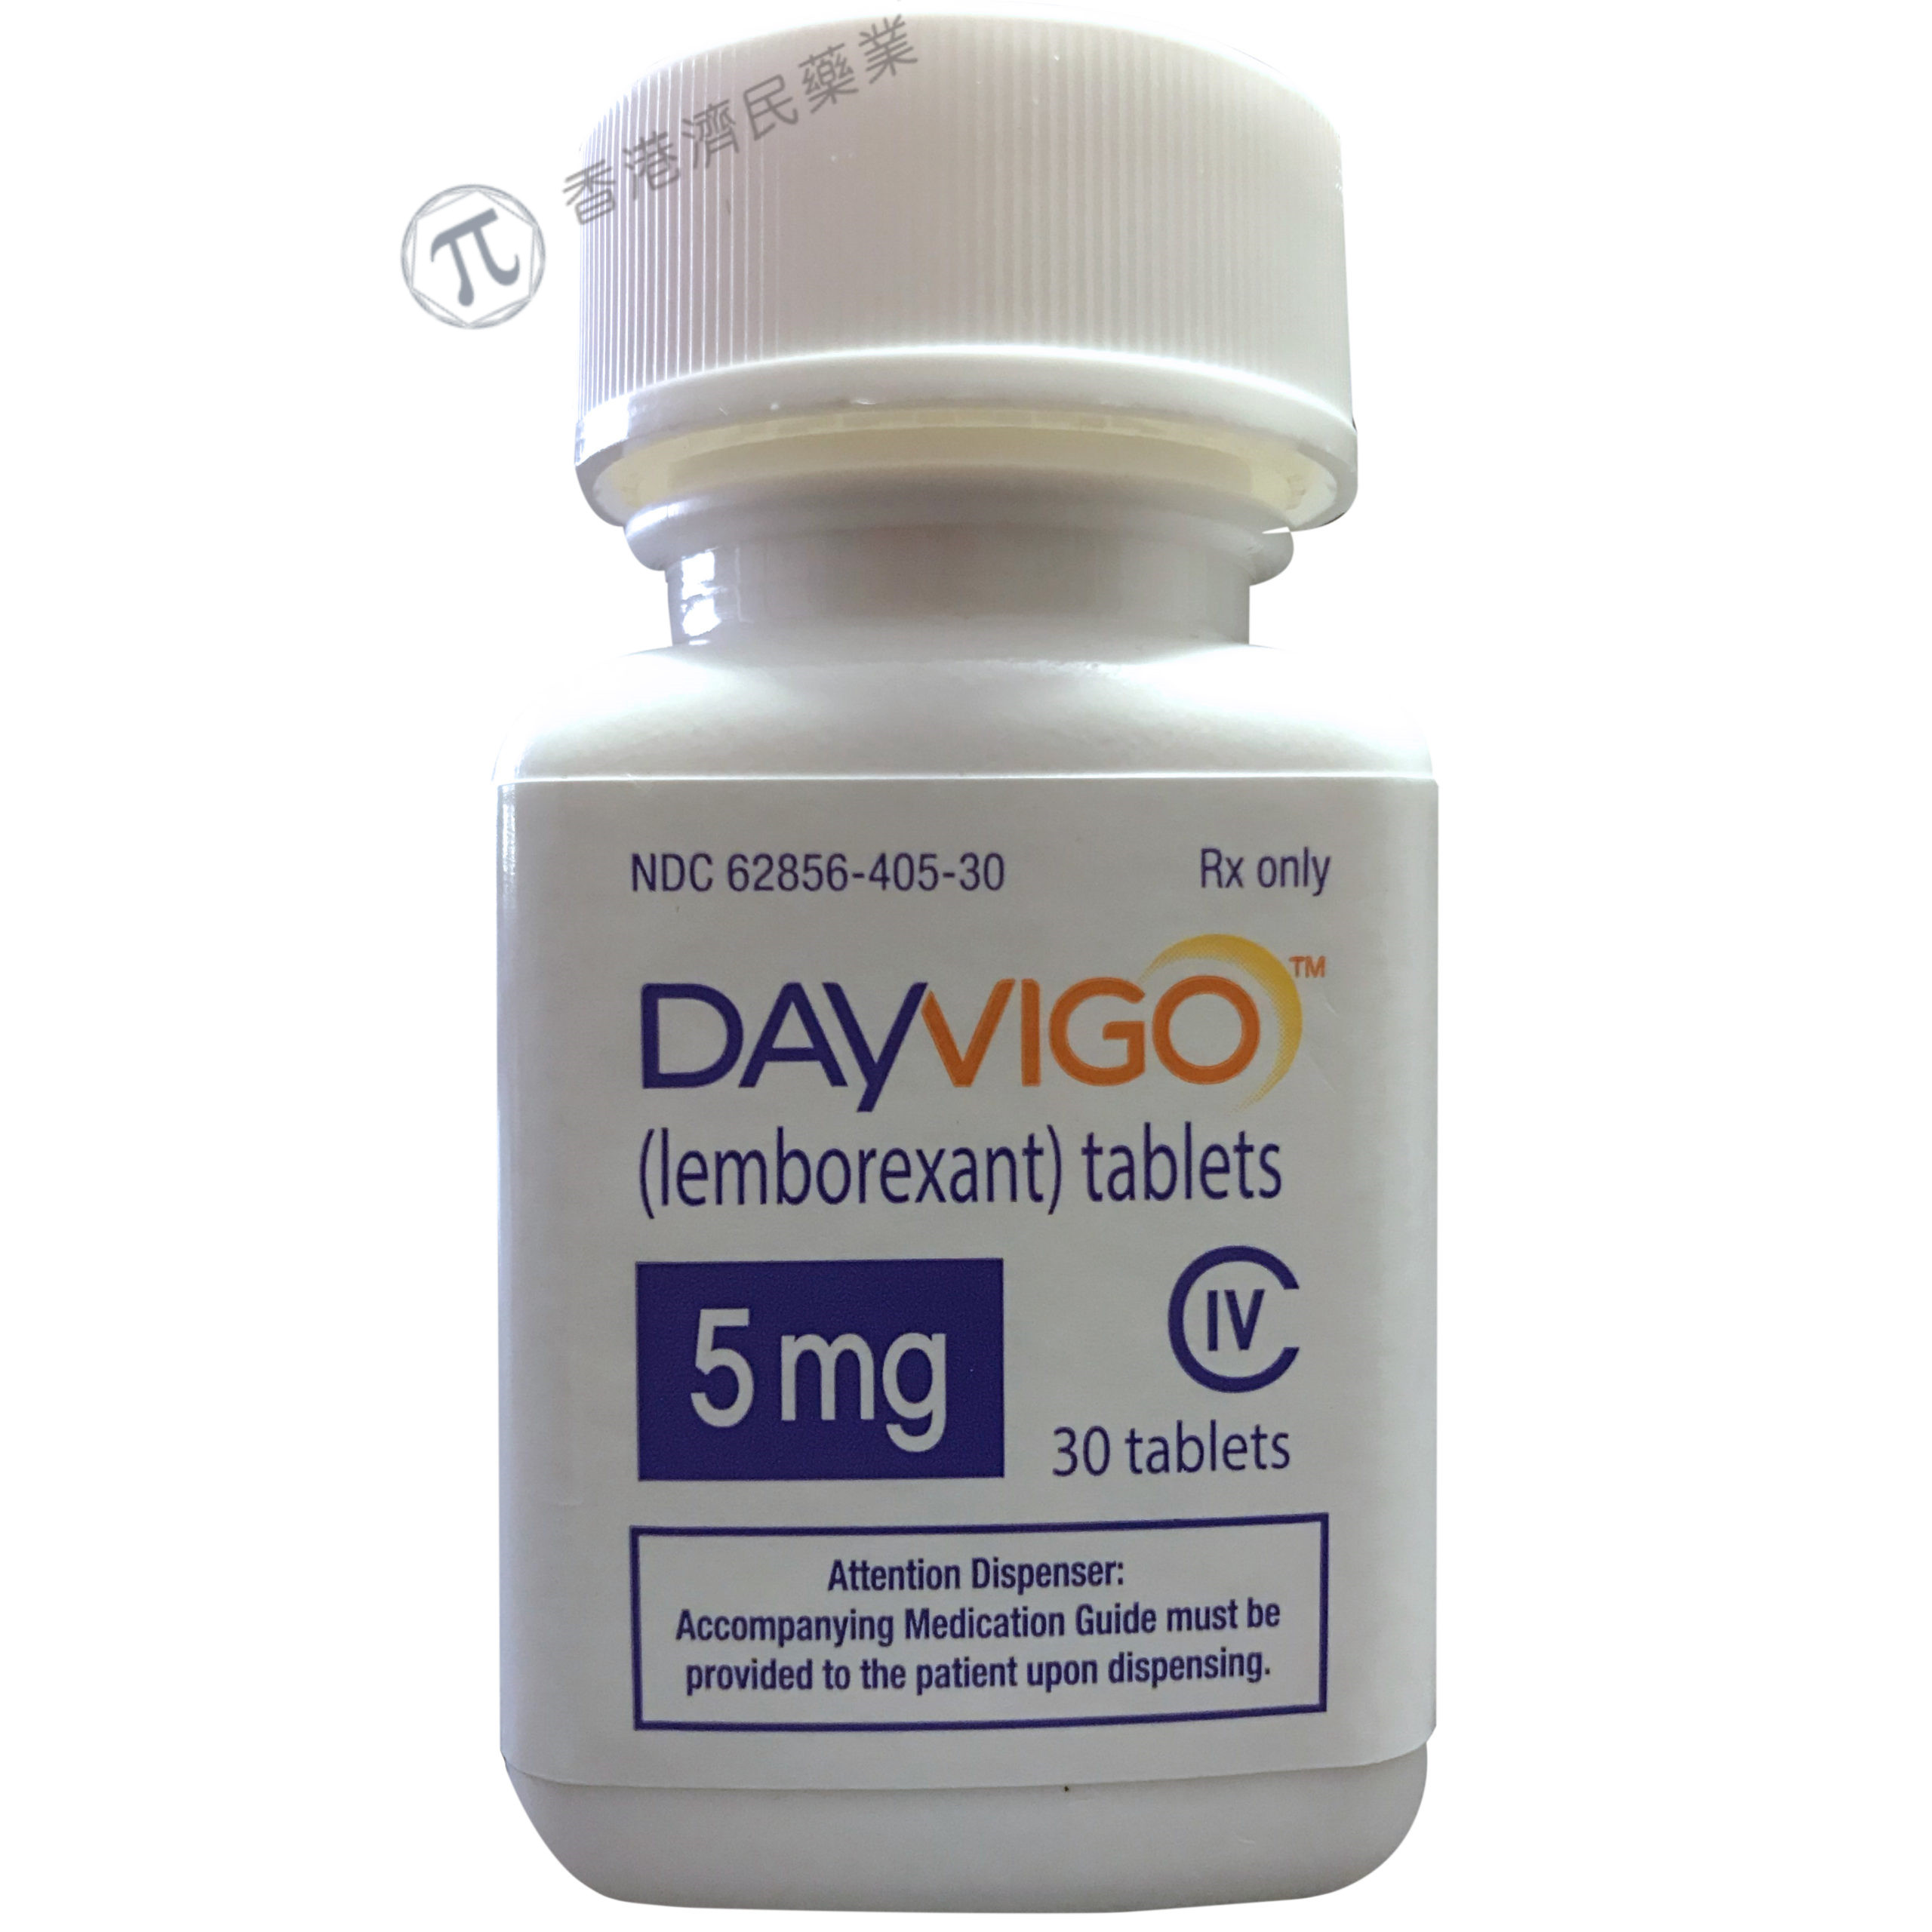 抗失眠药物Dayvigo更新标签：纳入了呼吸功能受损患者的使用数据_香港济民药业